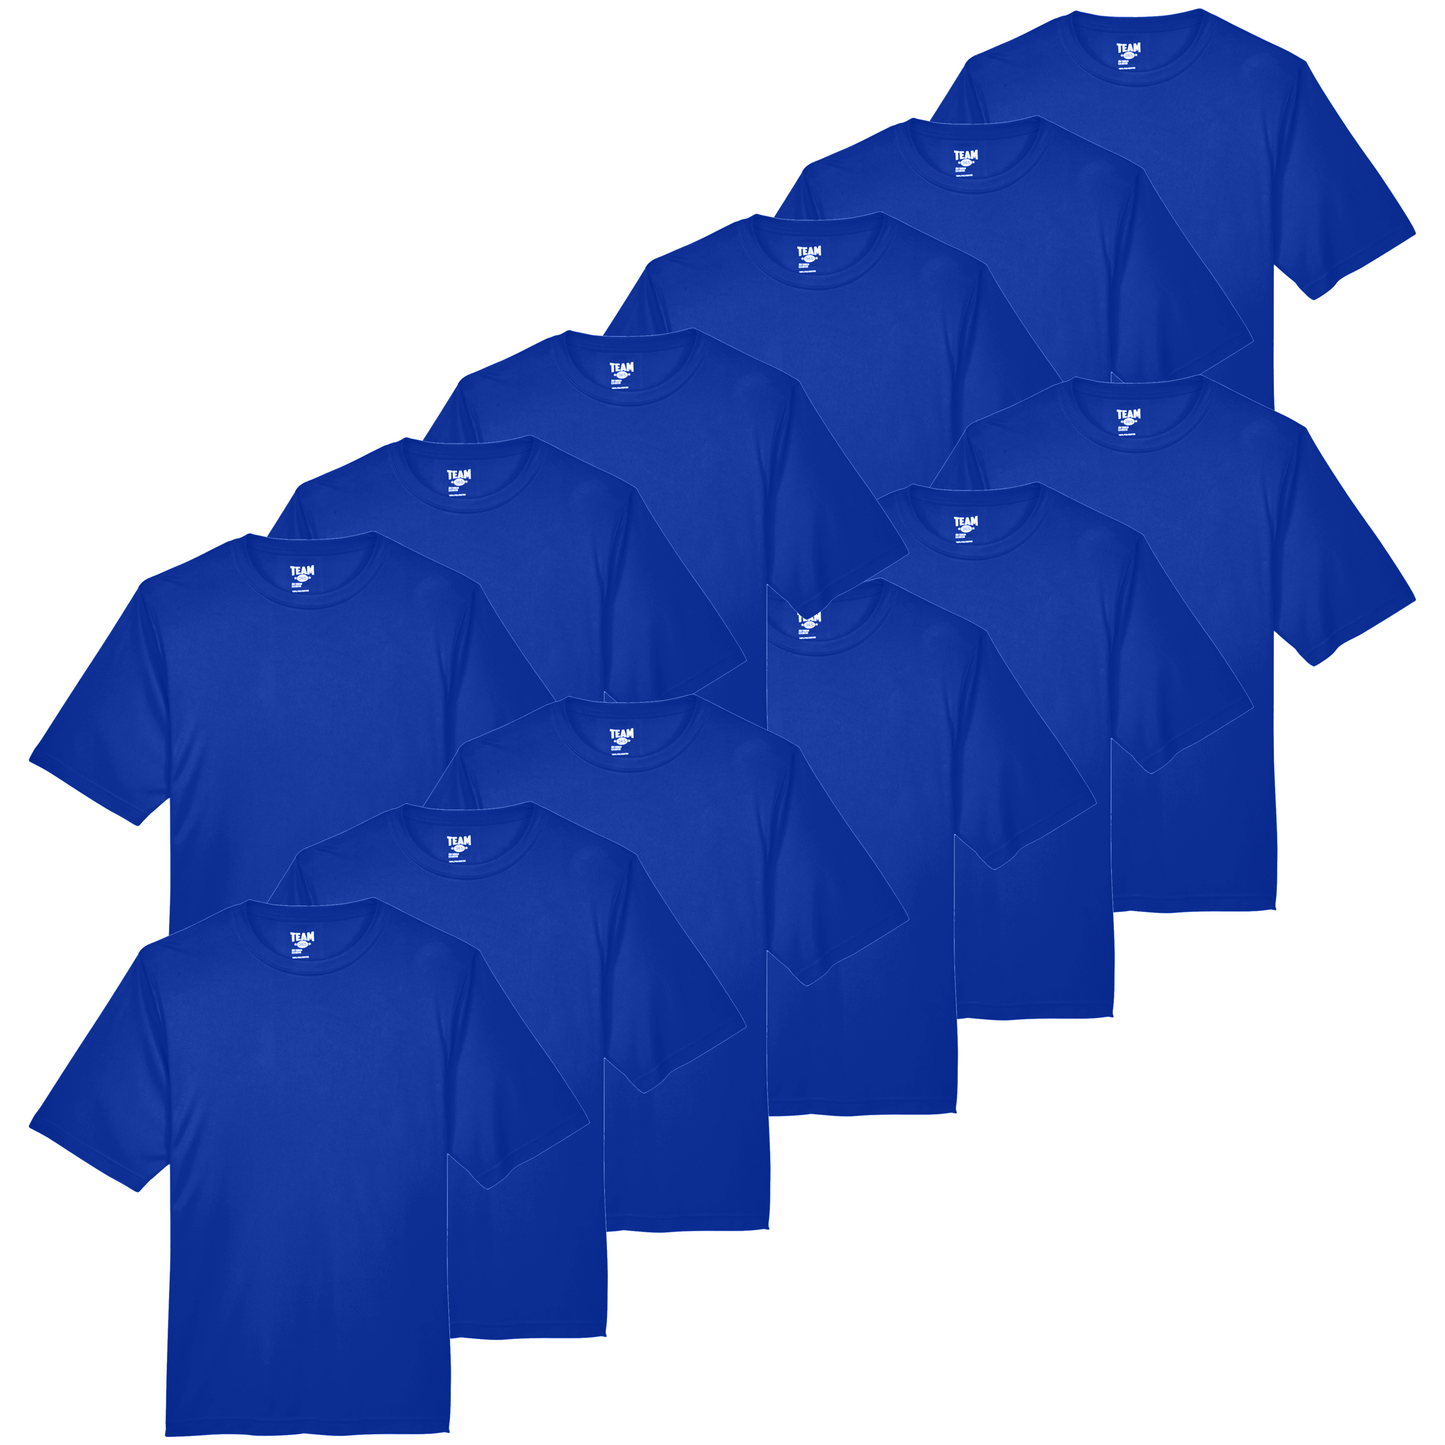 Team®365™ Men's SS Wholesale - Royal Blue